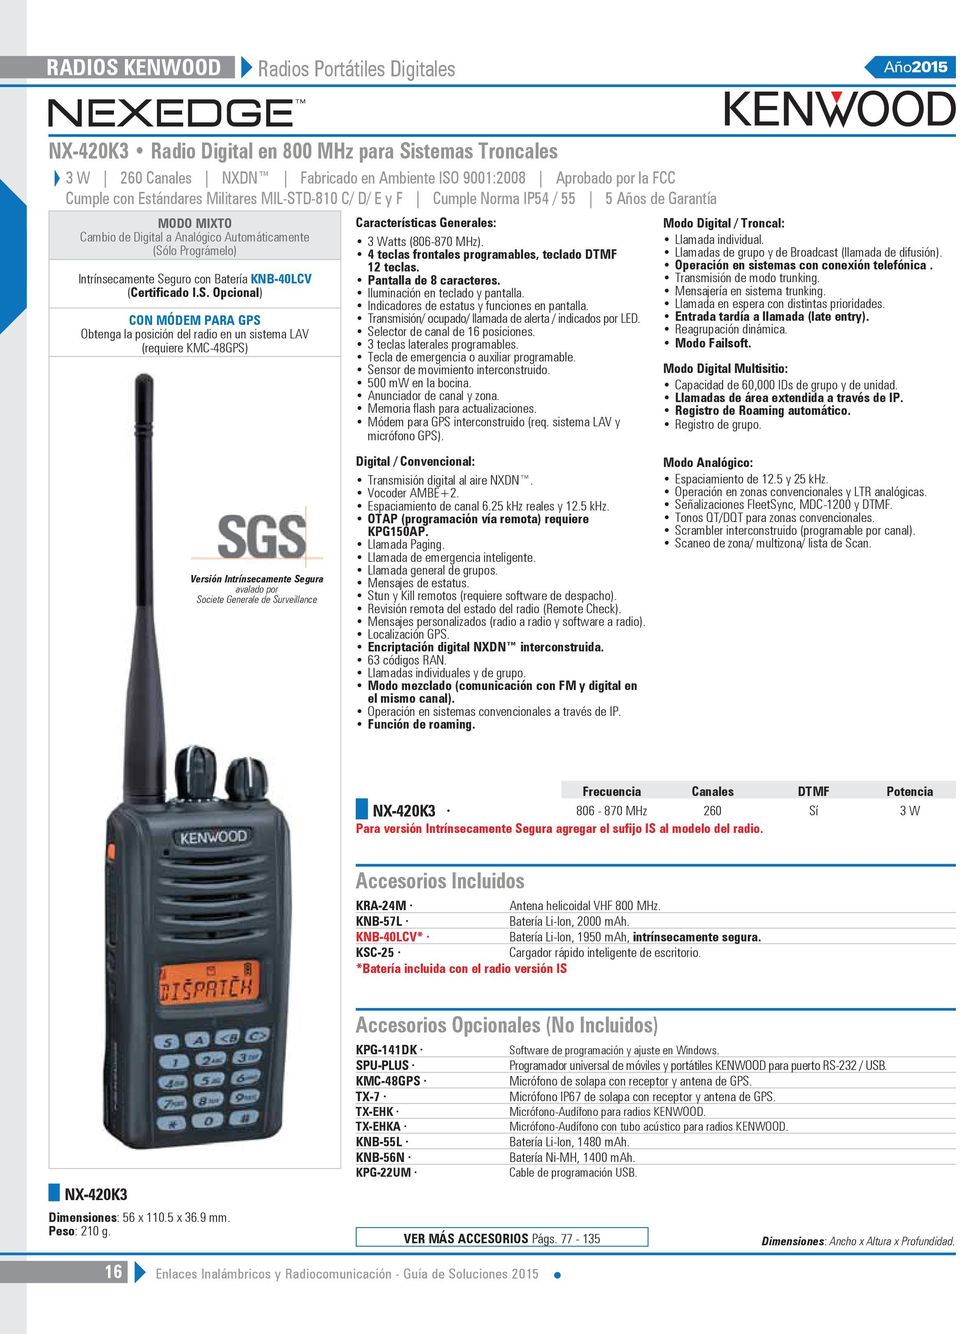 I.S. Opcional) CON MÓDEM PARA GPS Obtenga la posición del radio en un sistema LAV (requiere KMC-48GPS) Versión Intrínsecamente Segura avalado por Societe Generale de Surveillance Características